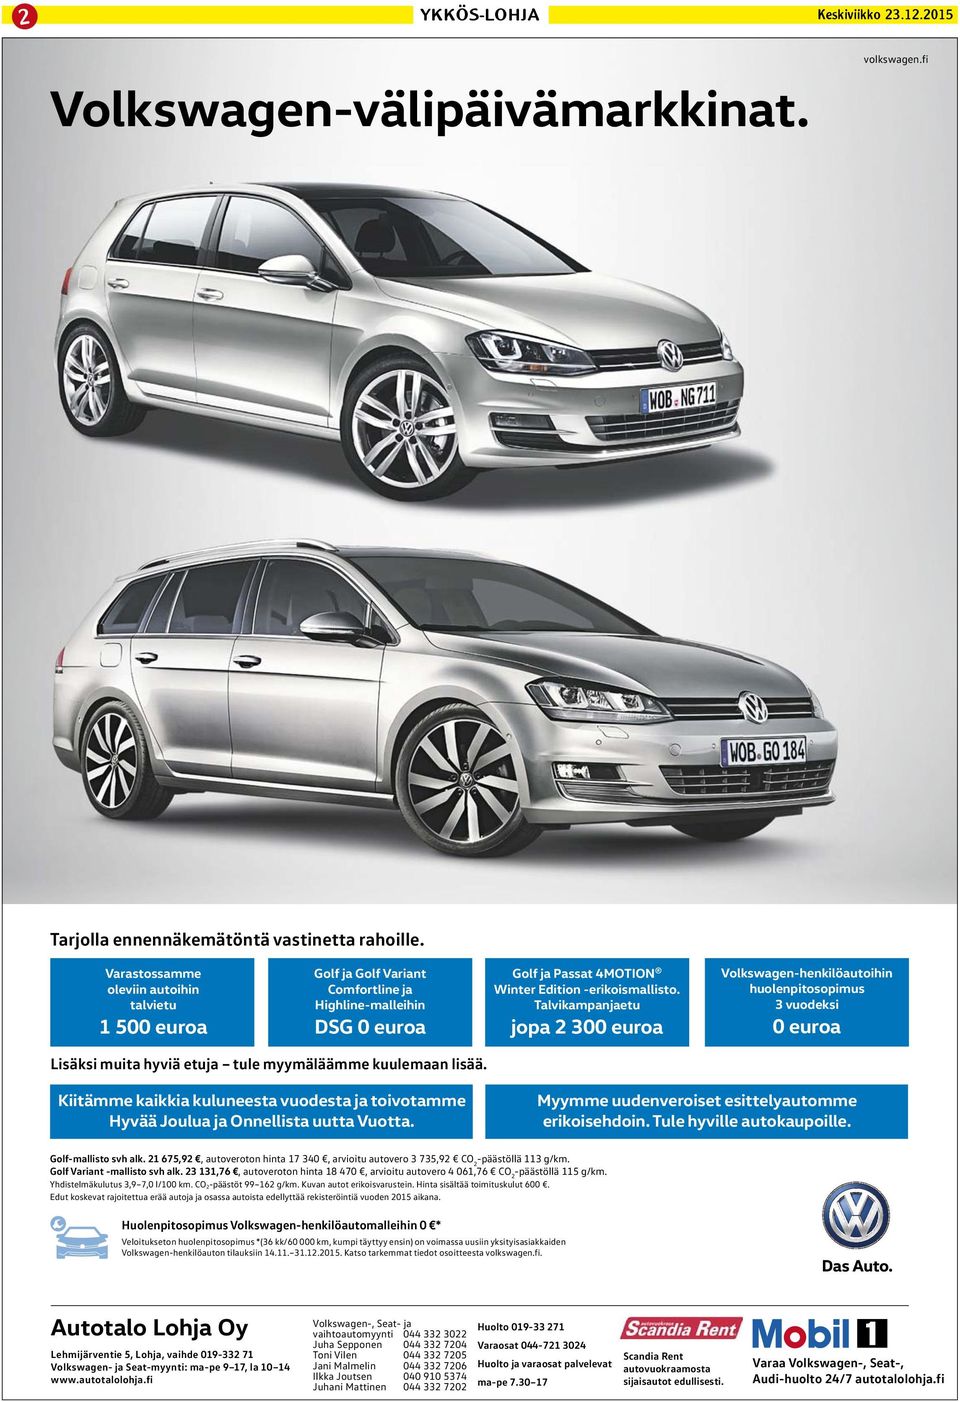 Talvikampanjaetu jopa 2 300 euroa Volkswagen-henkilöautoihin huolenpitosopimus 3 vuodeksi 0 euroa Lisäksi muita hyviä etuja tule myymäläämme kuulemaan lisää.